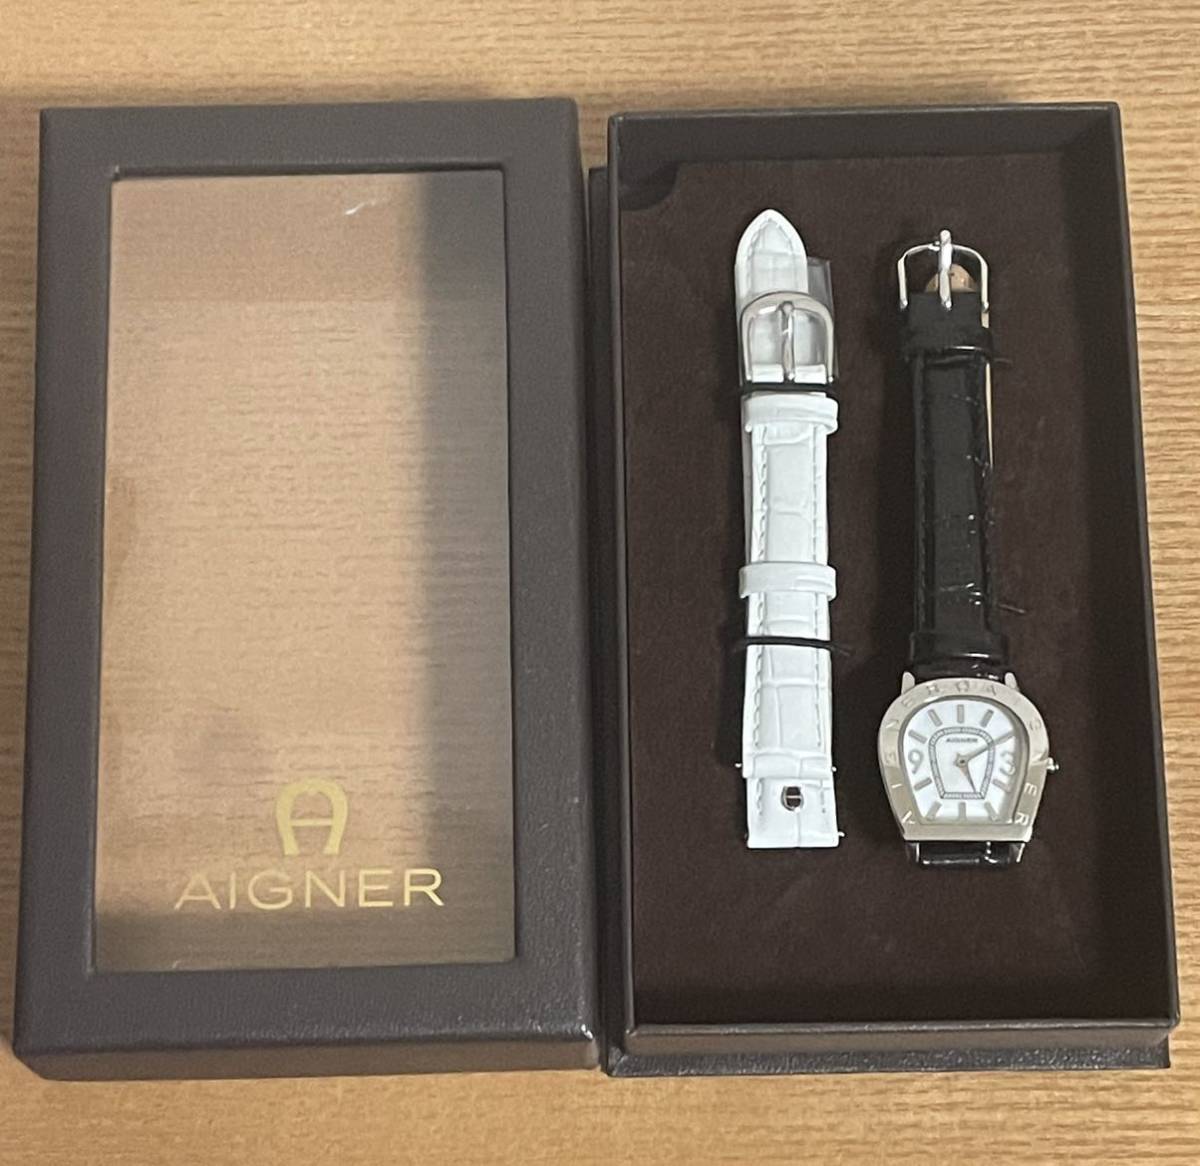 AIGNER アイグナー アマルフィ A32200 レディース腕時計 新品未使用